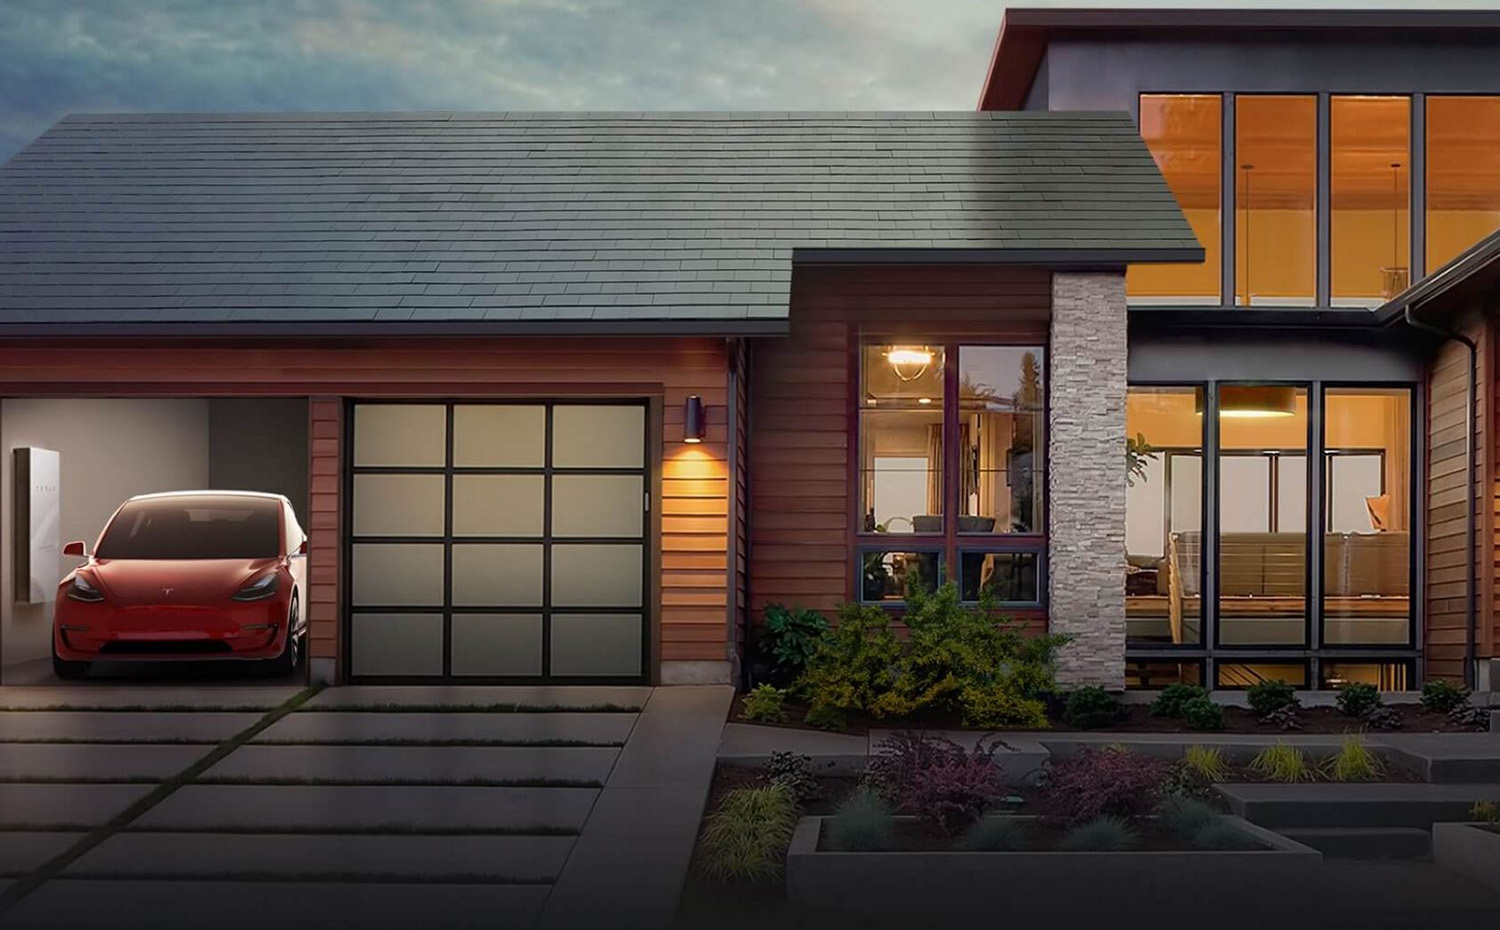 tesla-solar-roof. La firma Tesla ha desarrollado una cubierta solar a partir de tejas de vidrio templado. Gracias a la integración con la batería Powerwall, la energía que se recoge durante el día se almacena y está disponible en todo momento